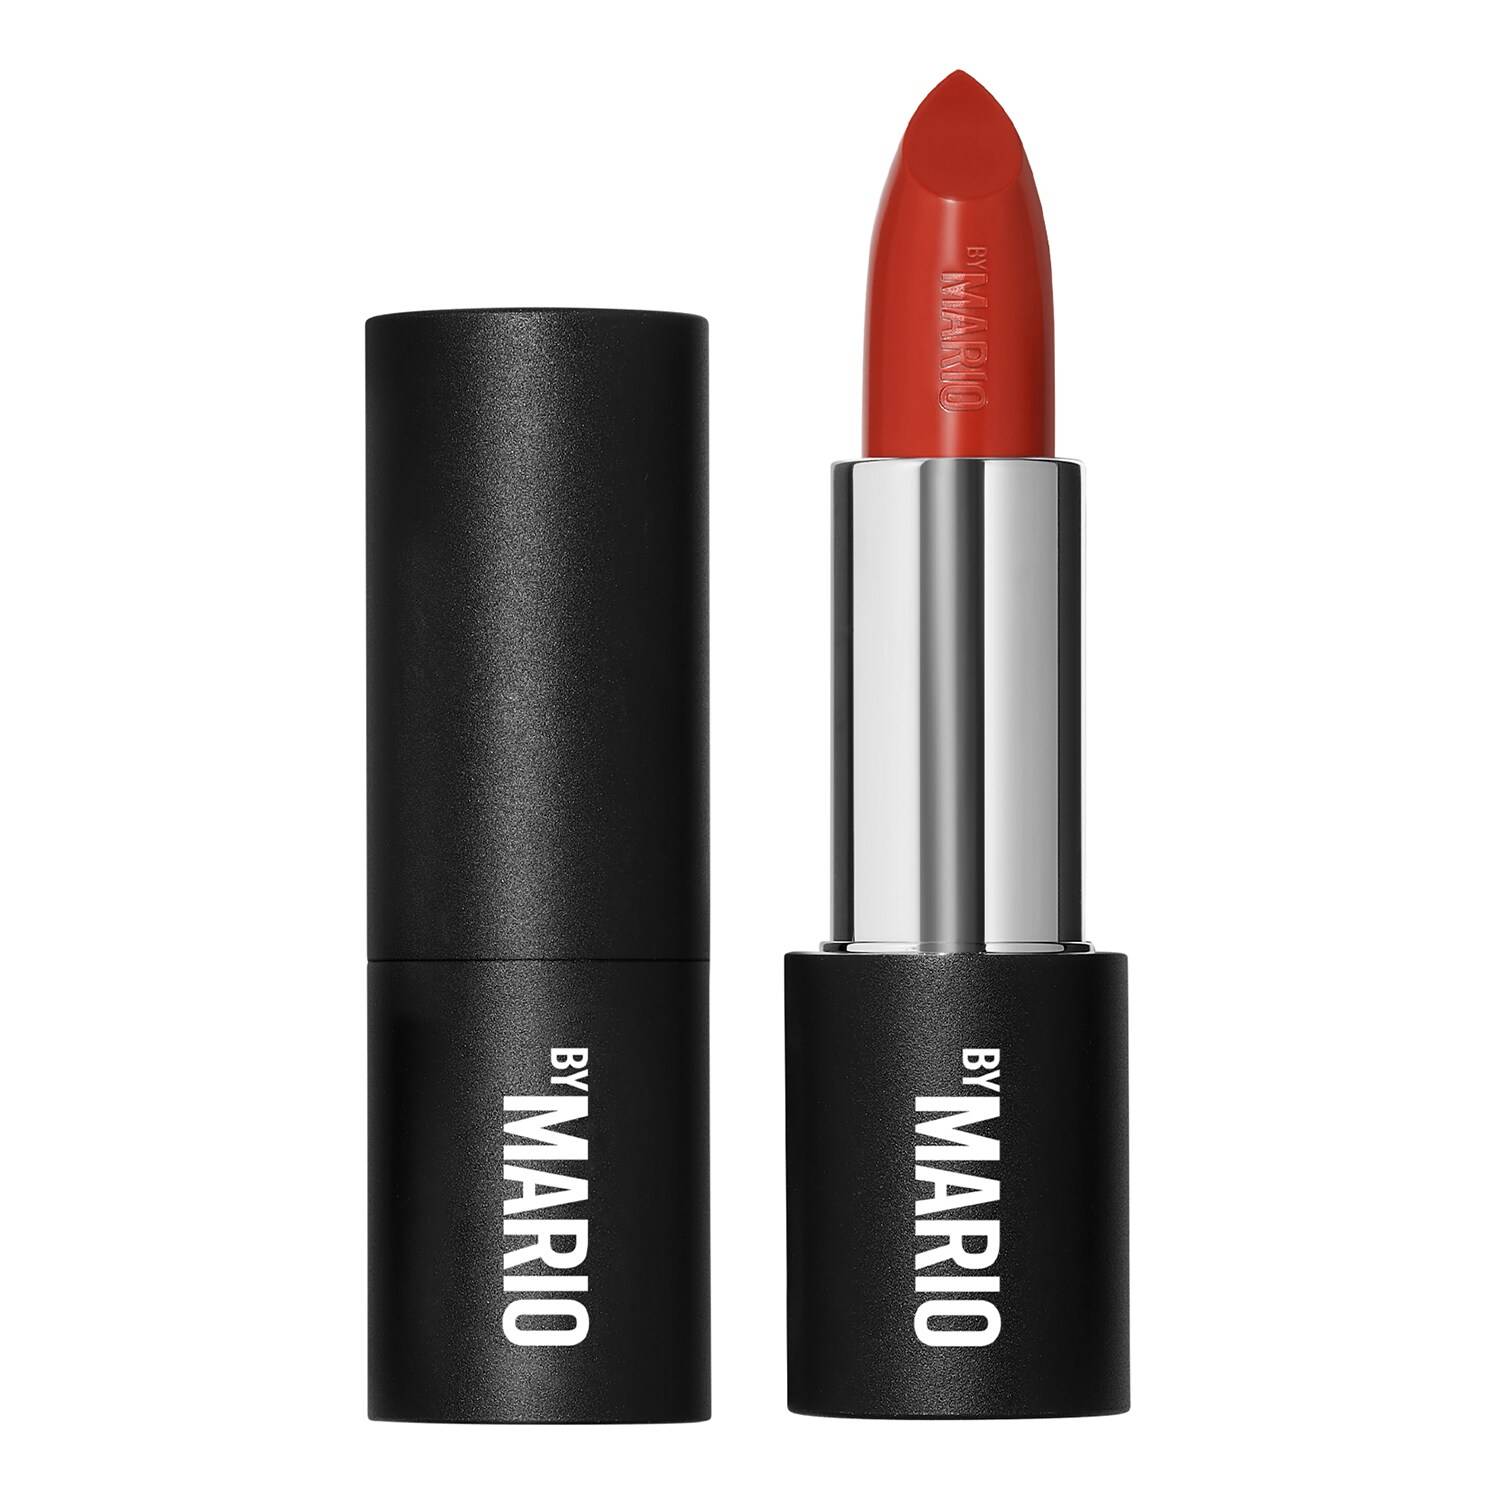 Makeup By Mario Supersatin Lipstick 3.5G Harlem - Warm Brick Red